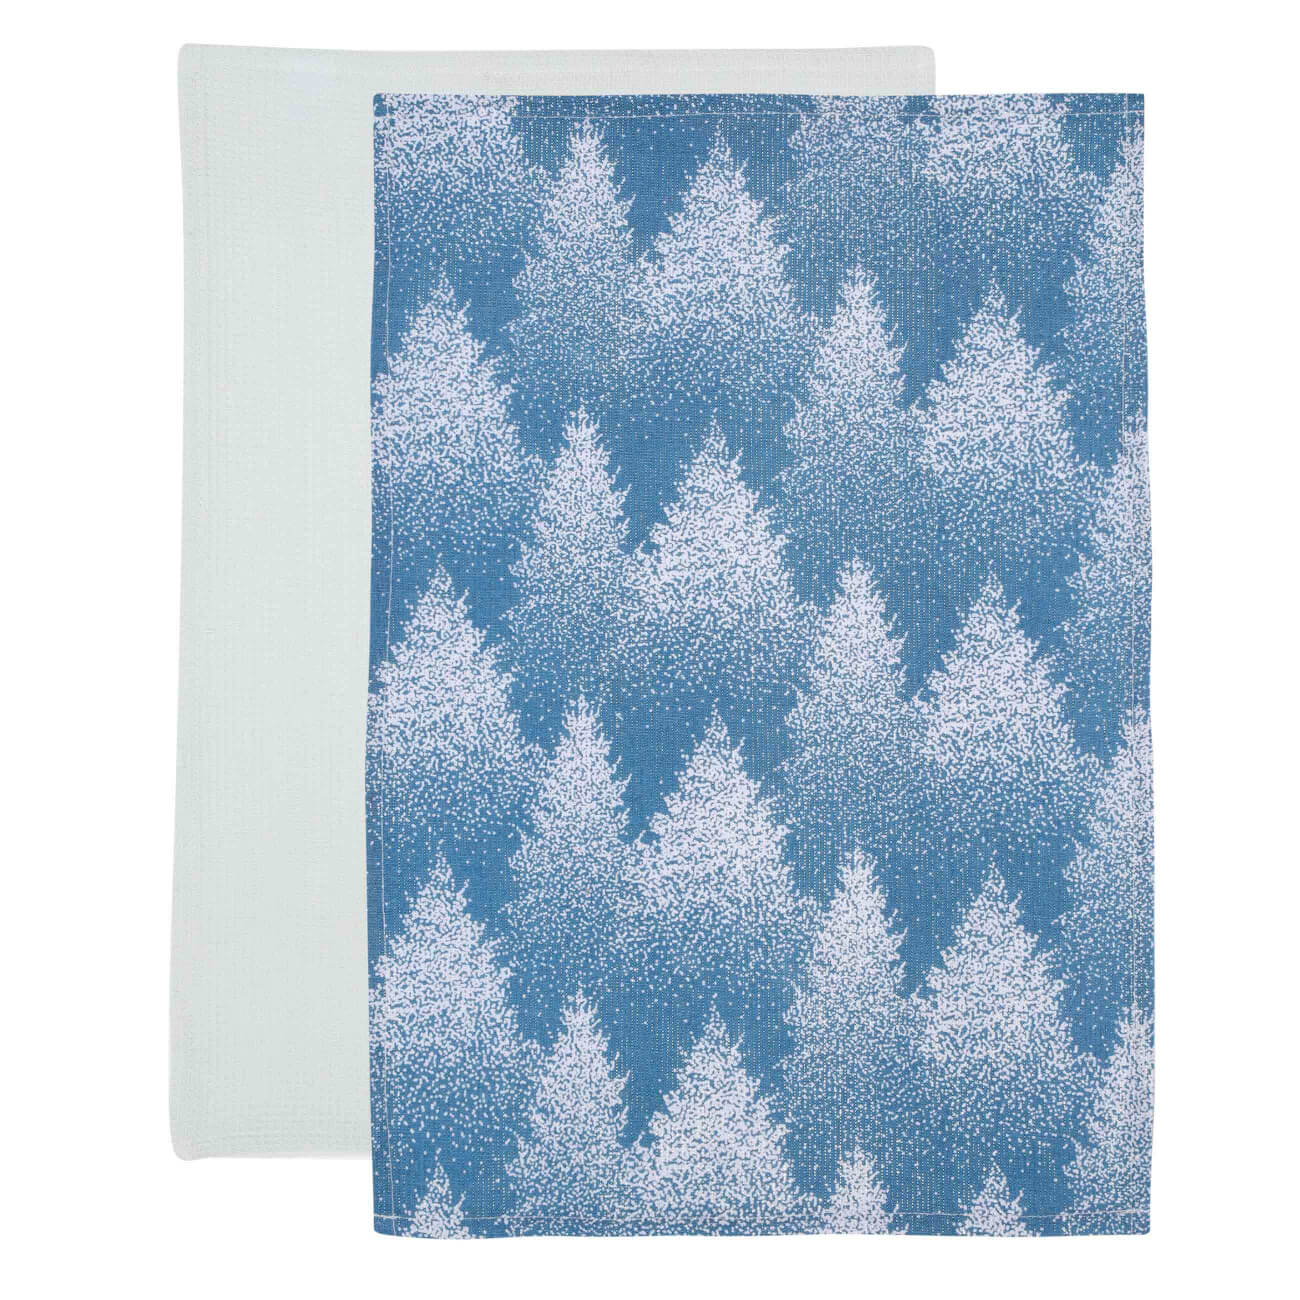 Полотенце кухонное, 40х60 см, 2 шт, хлопок, голубое/белое, Снежные ели, Snowy fir полотенце xiaomi zsh youth series 34cm x 76cm белое